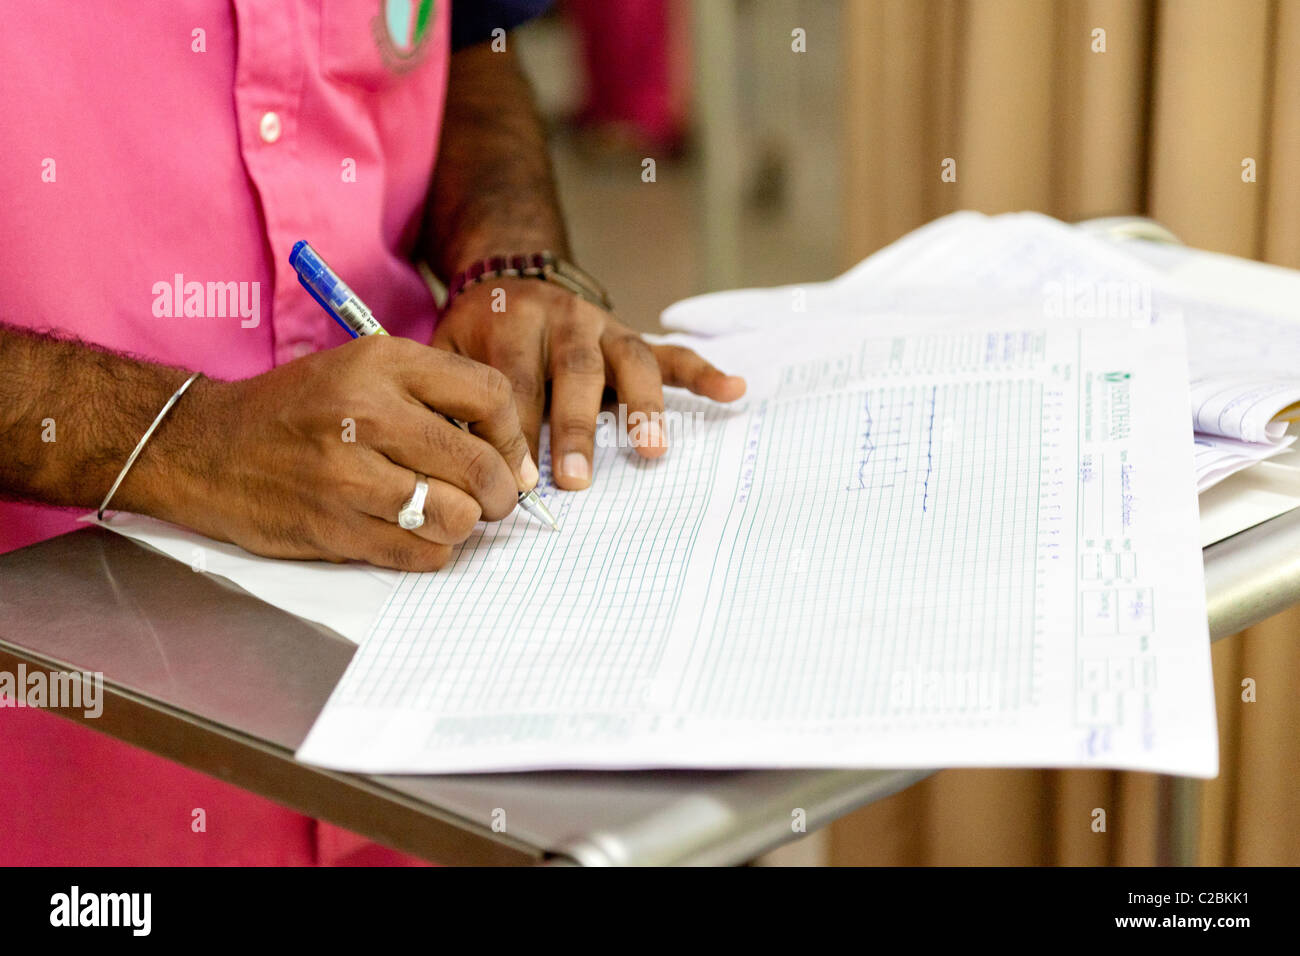 Une infirmière rédige des notes dans les patients d'une unité de soins intensifs (USI) de l'hôpital de Yaçodhara Sholapur Inde Banque D'Images